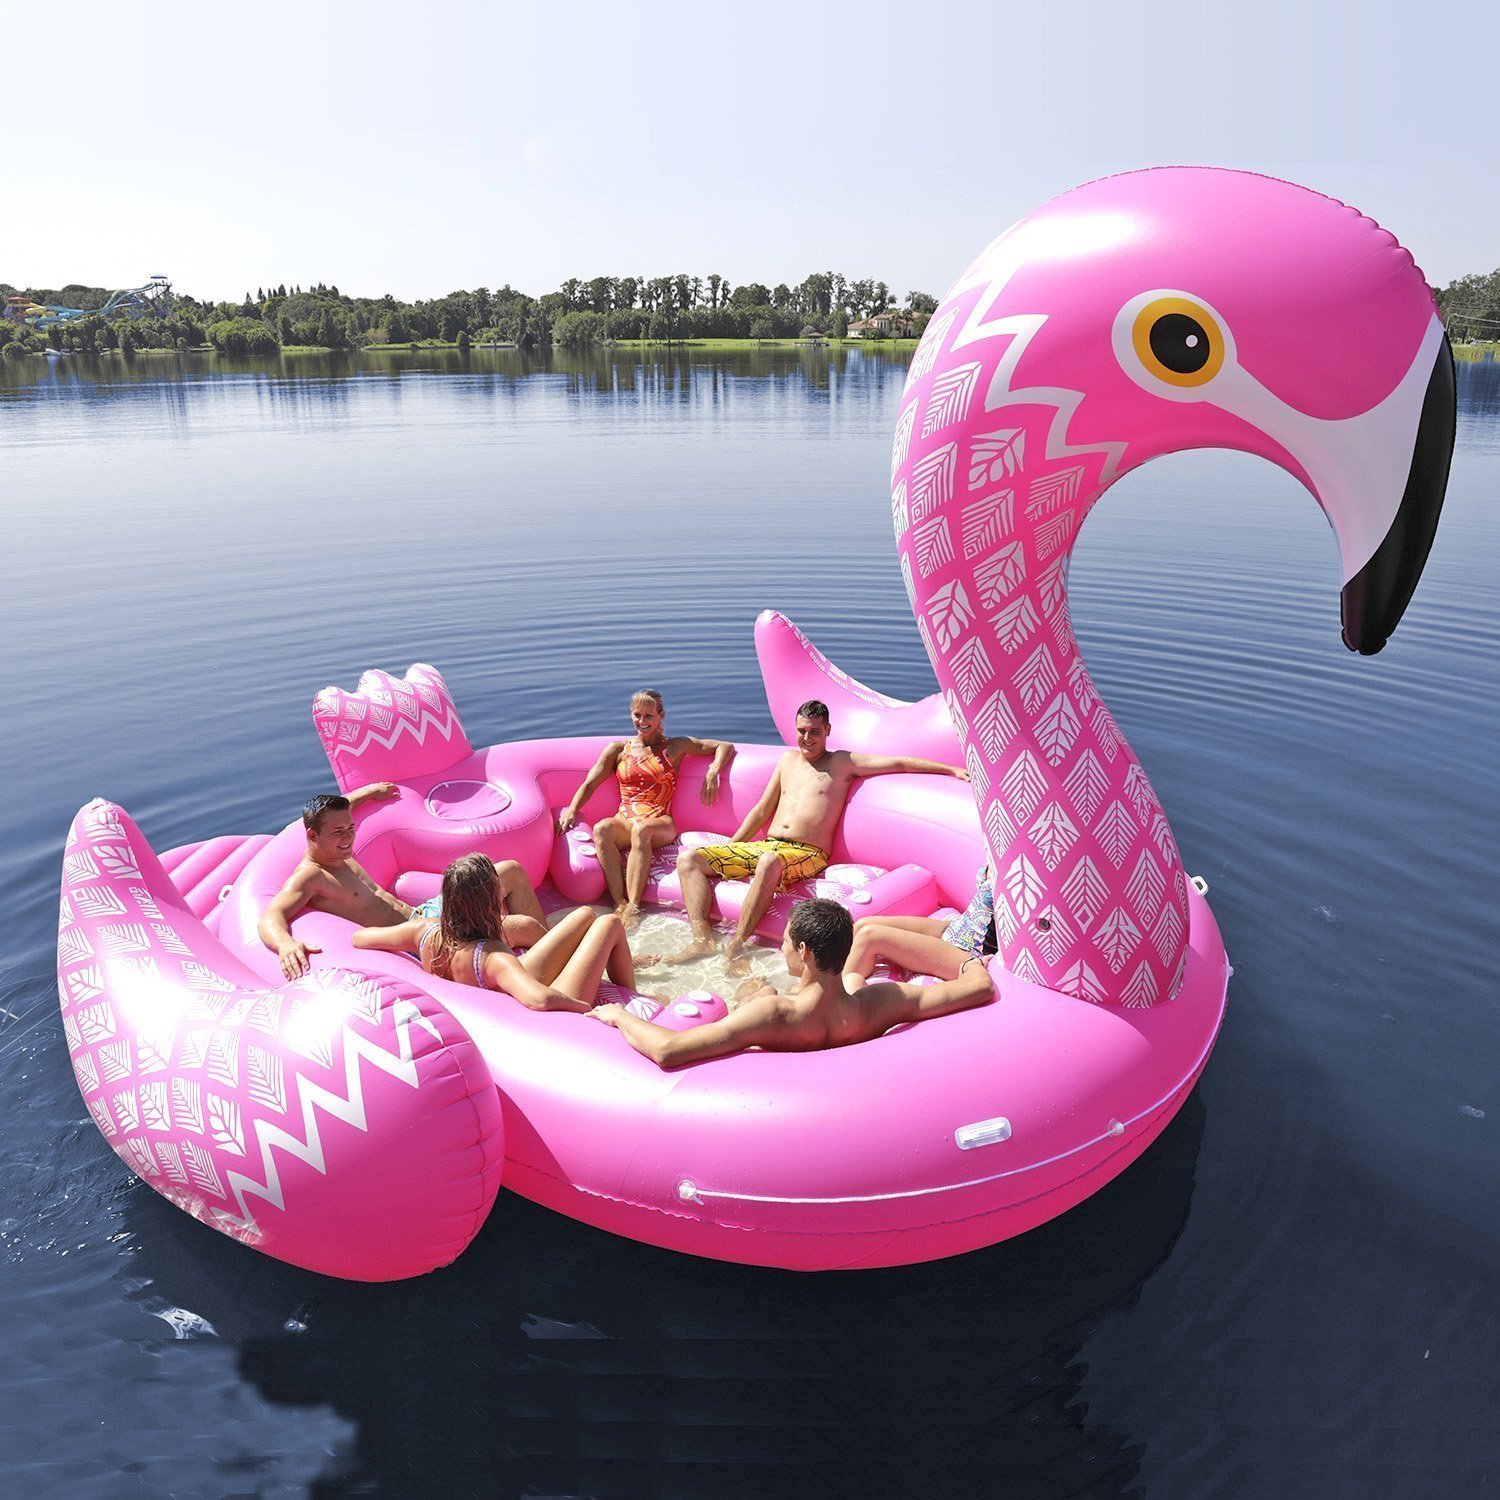 Pink Flamingo Lake size blow up raft